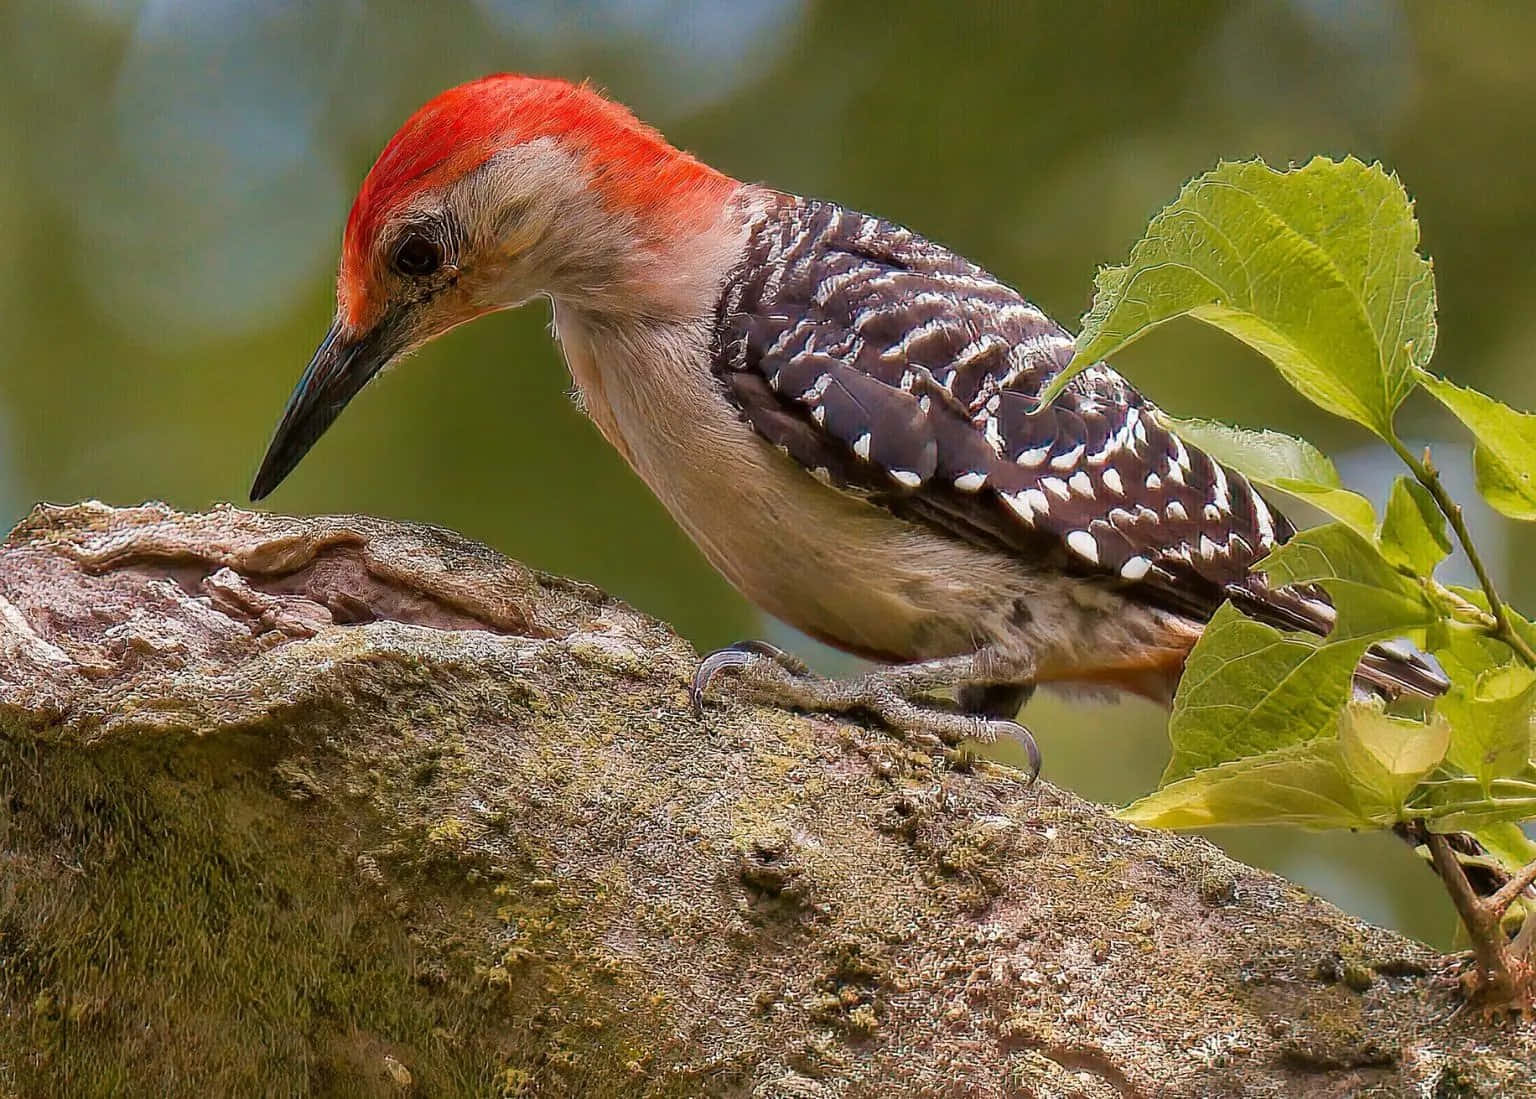 Woodpecker perching on a tree